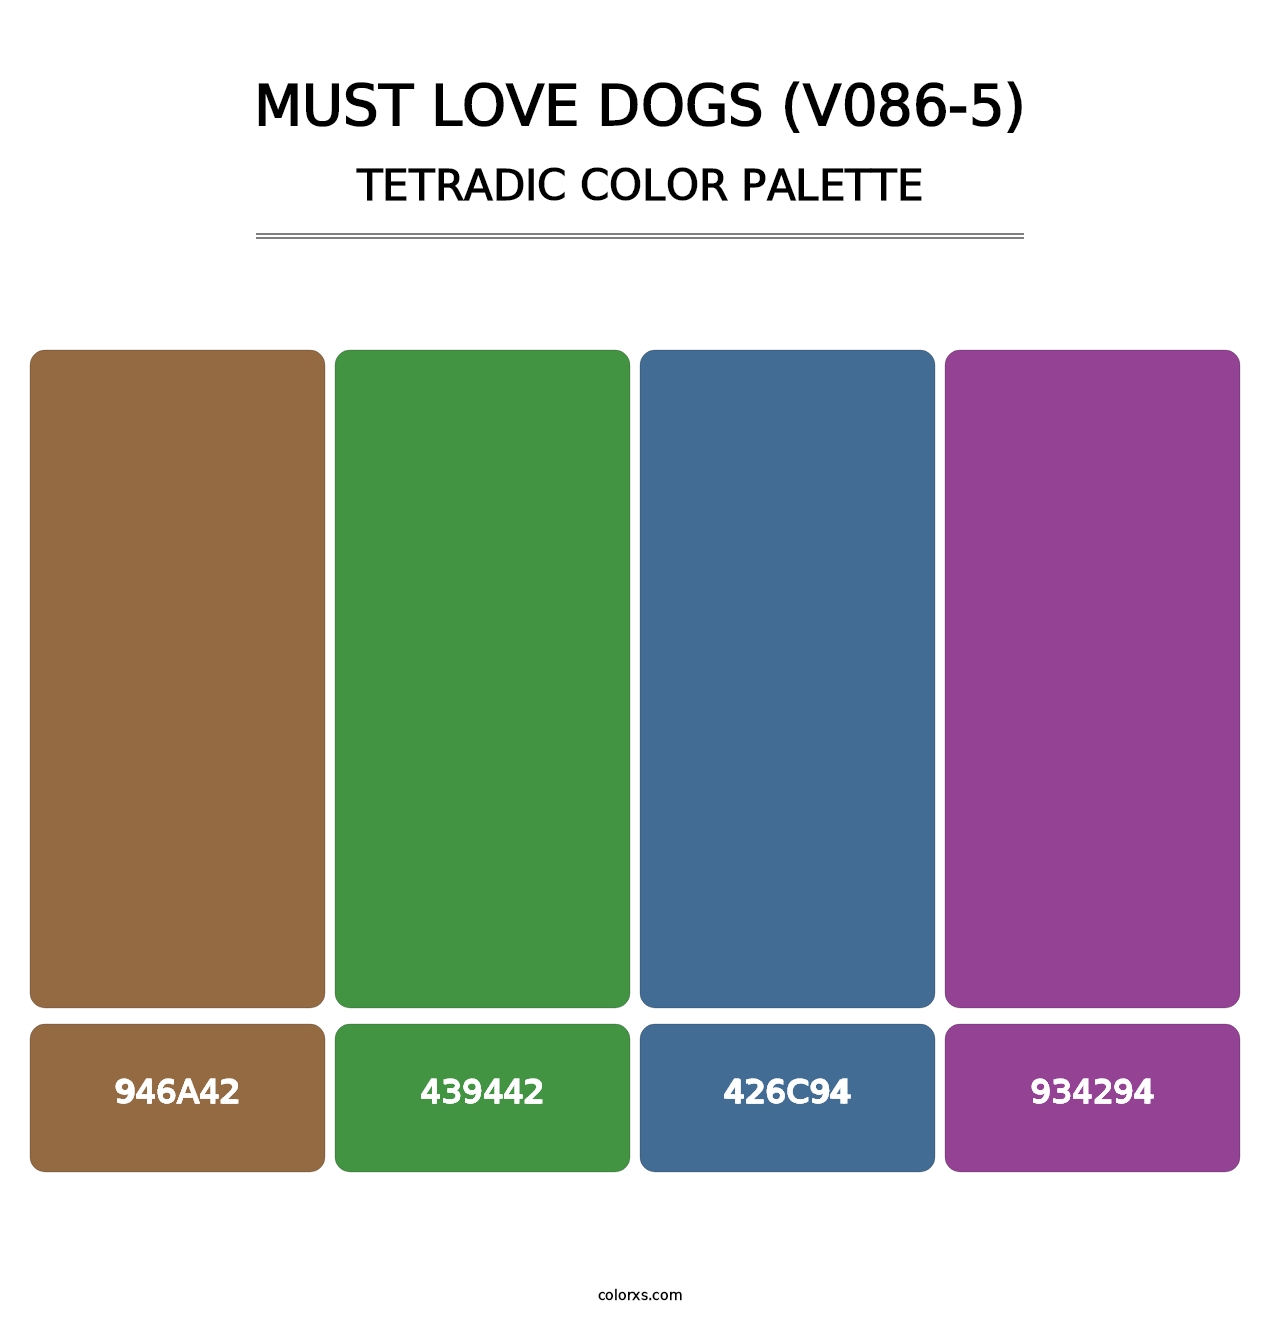 Must Love Dogs (V086-5) - Tetradic Color Palette